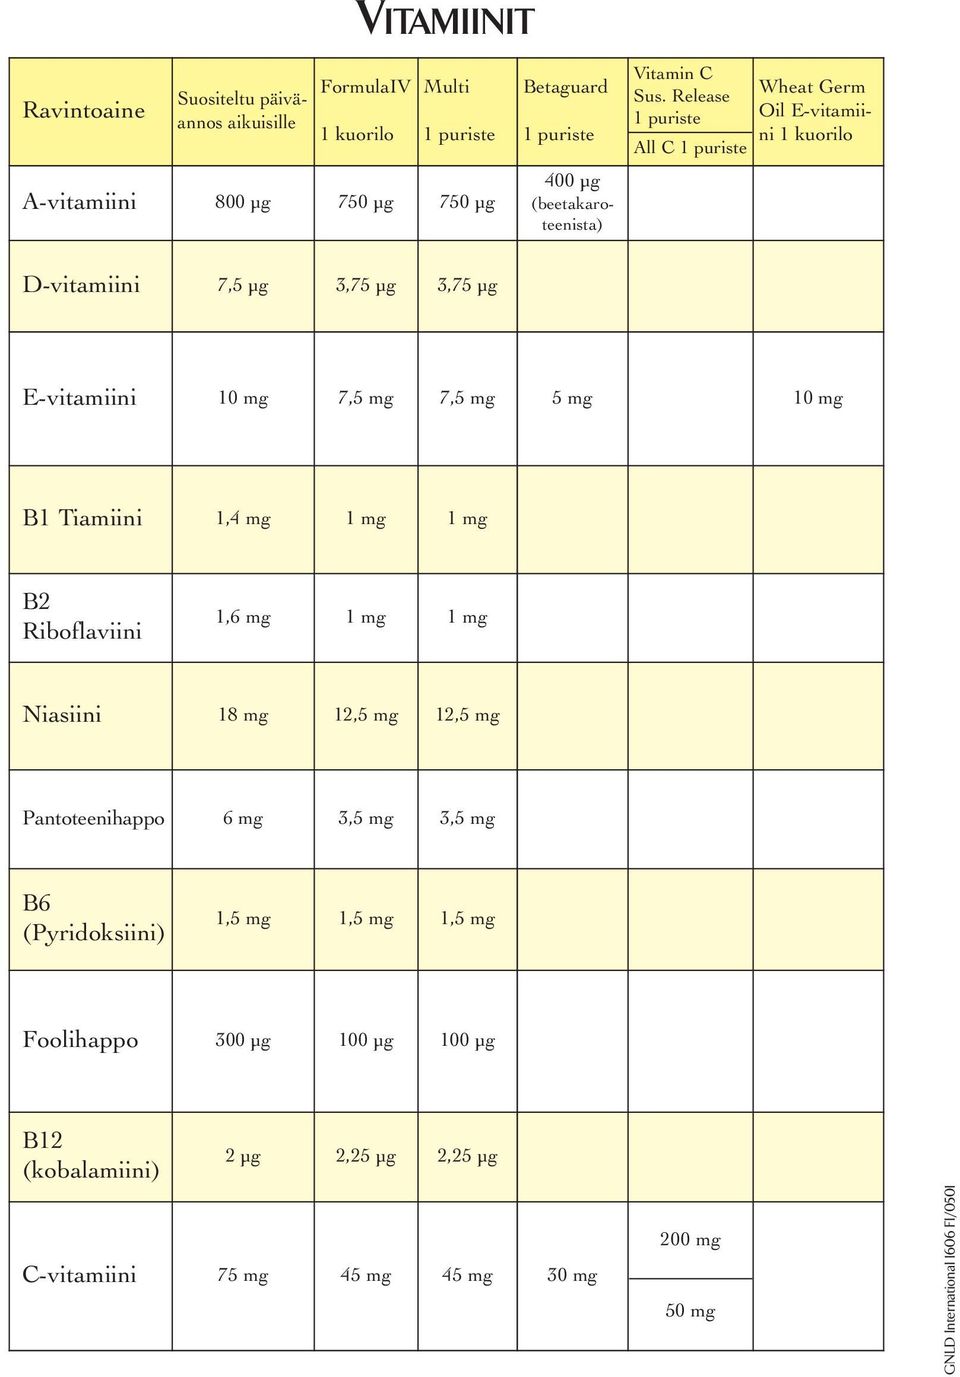 Tiamiini 1,4 mg 1 mg 1 mg B2 Riboflaviini 1,6 mg 1 mg 1 mg Niasiini 18 mg 12,5 mg 12,5 mg Pantoteenihappo 6 mg 3,5 mg 3,5 mg B6 (Pyridoksiini) 1,5